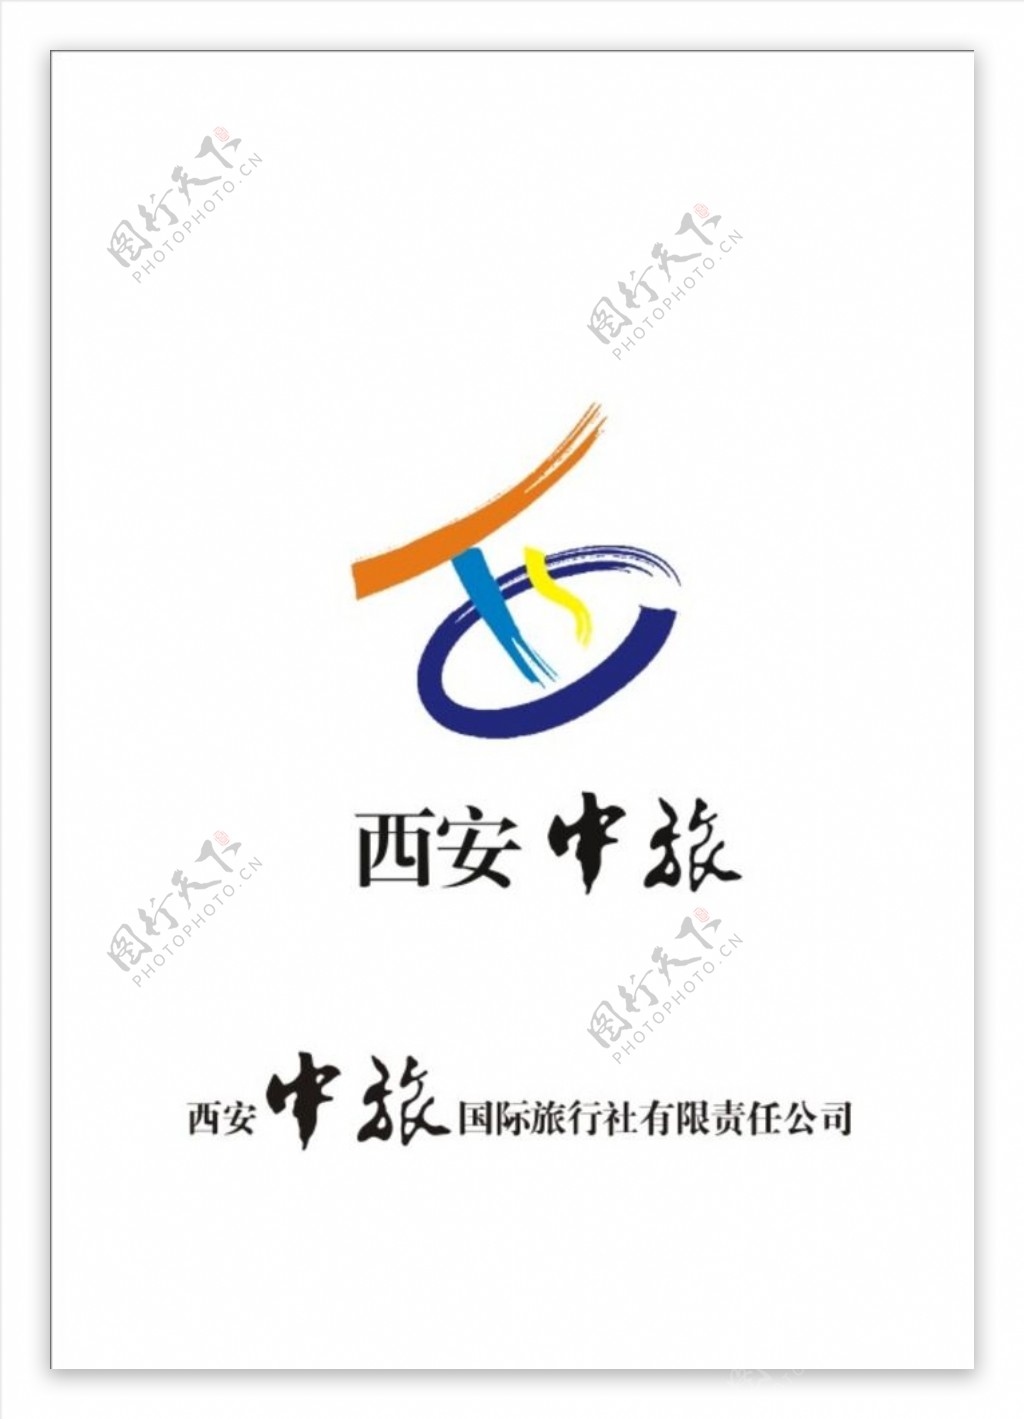 西安中旅logo